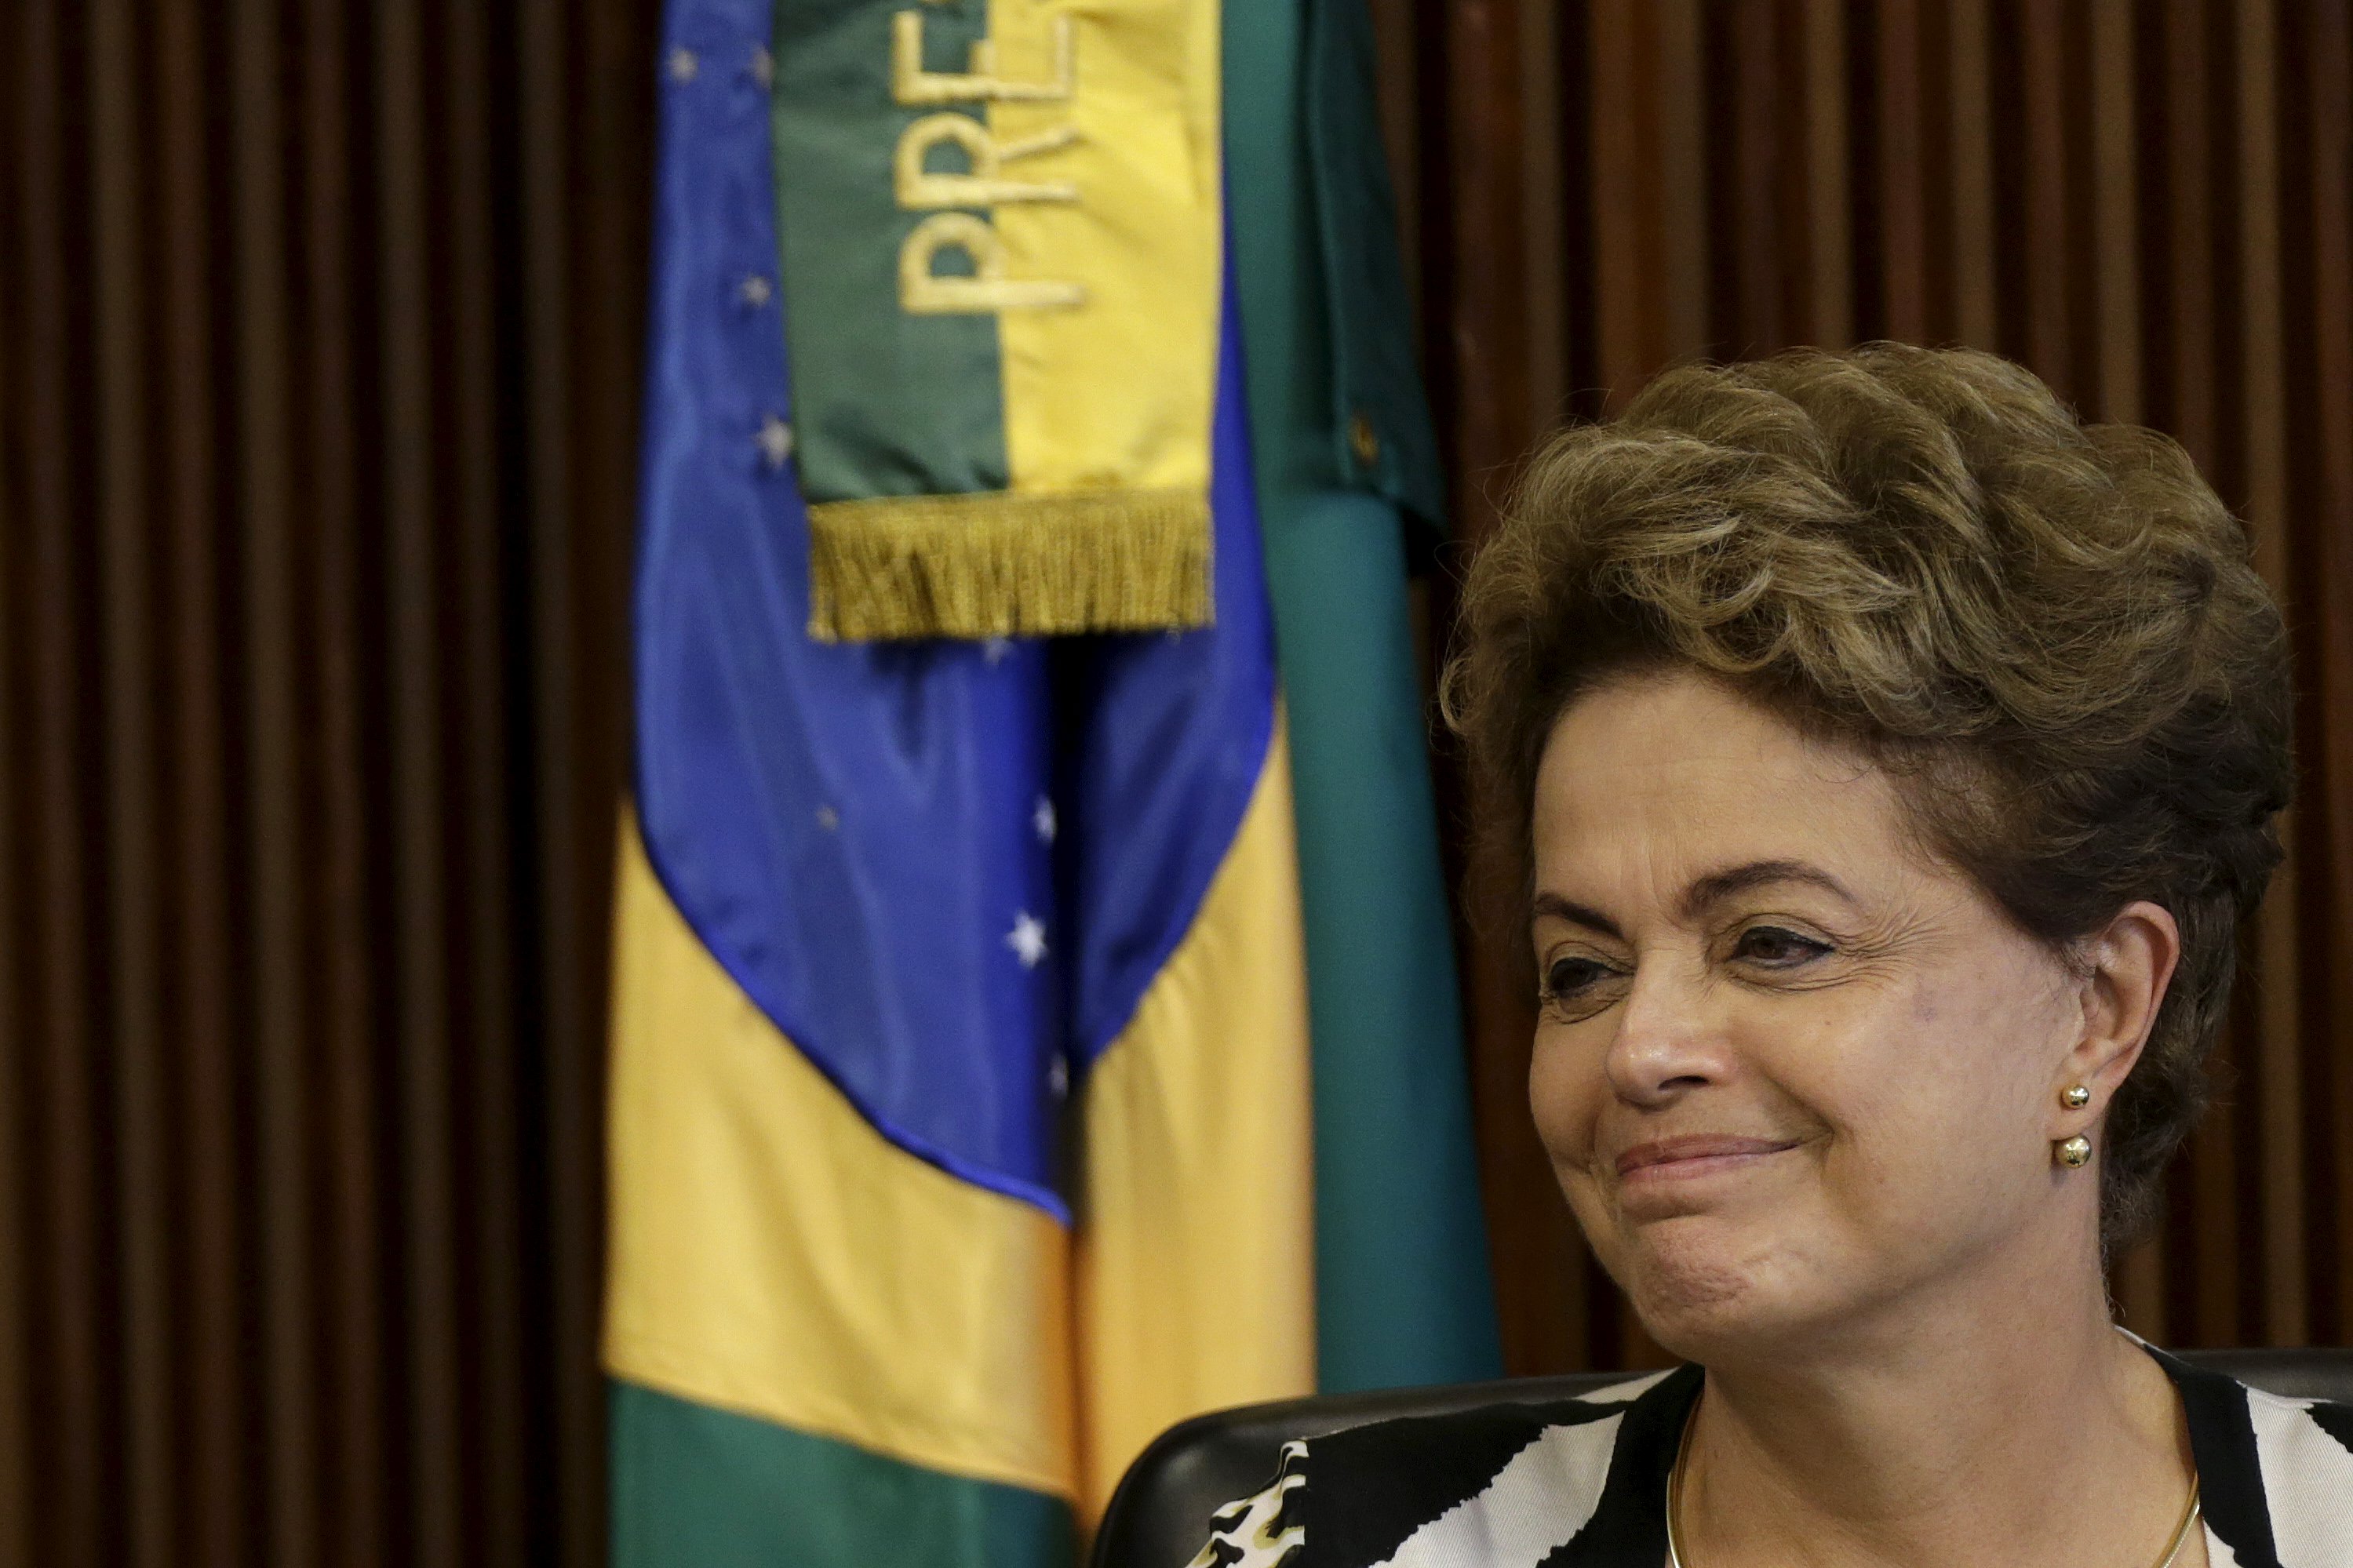 La presidenta de Brasil, Dilma Rousseff, ha asegurado que no ha cometido actos ilícitos durante su gestión.